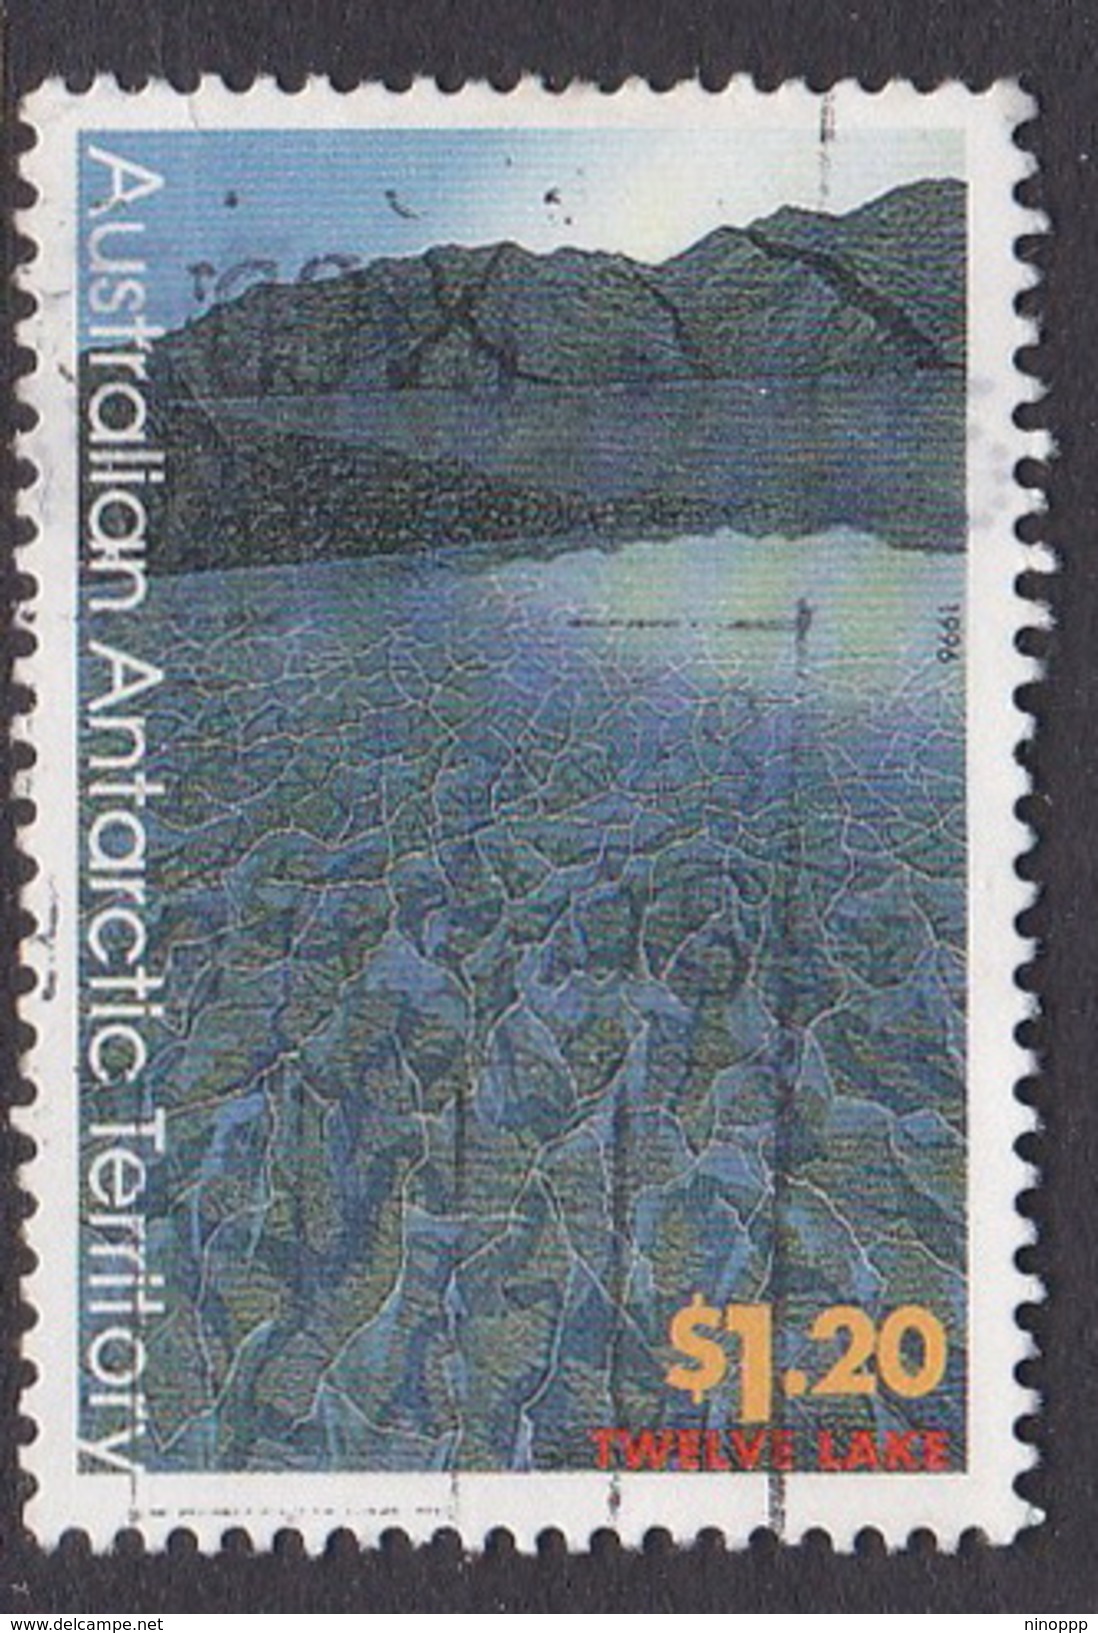 Australian Antarctic Territory  S 109 1996 Antarctic Landscapes $ 1.20 Twelve Lake Used - Usados